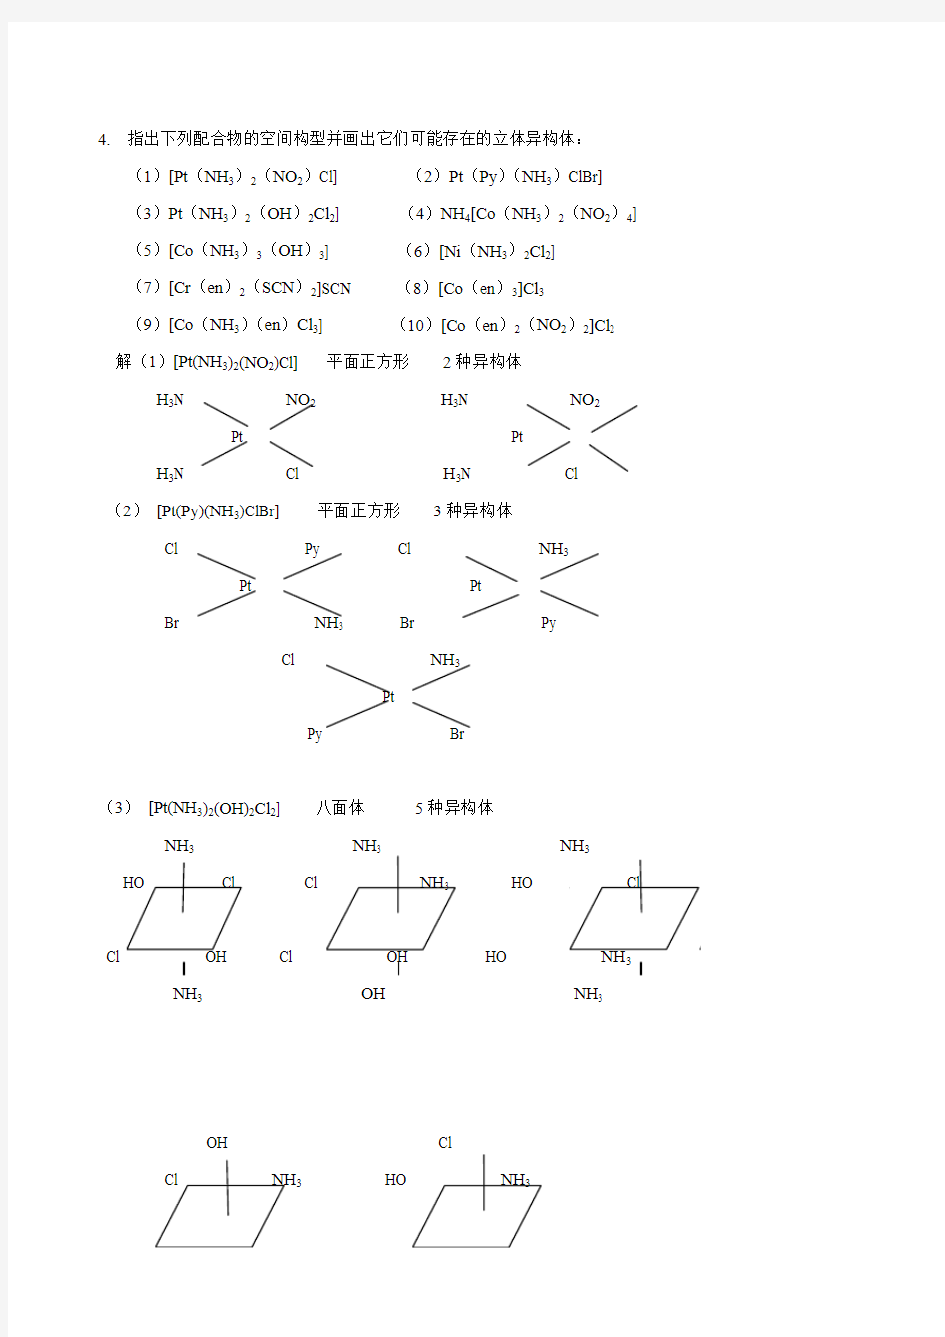 武汉大学版无机化学课后习题答案(第三版)第13章 配位化学原理